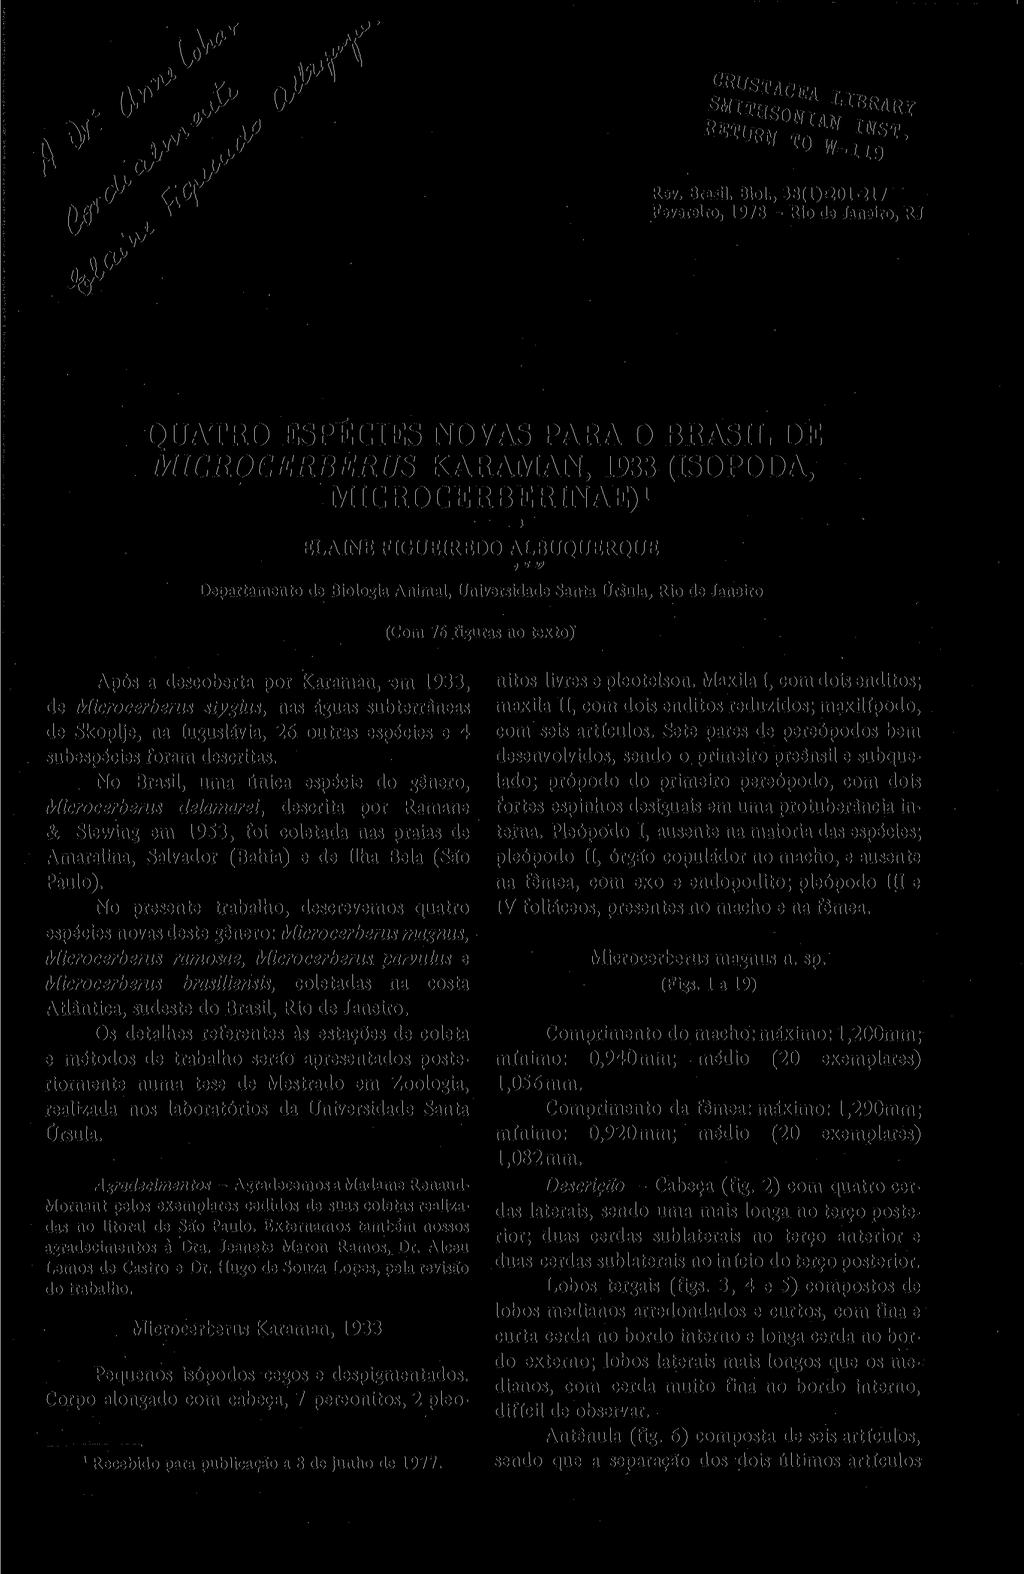 y F" tf Z1 lot-iif ' Rev. Brasa. Biol., 38(1)^01-217 Fevereiro, 1978 - Rio de Janeiro, RJ C» QUATRO ESPÉCIES NOVAS PARA O BRASIL DE MICROCERBERUS KARAMAN, 1933 (ISOPODA, MICROCERBERINAE).